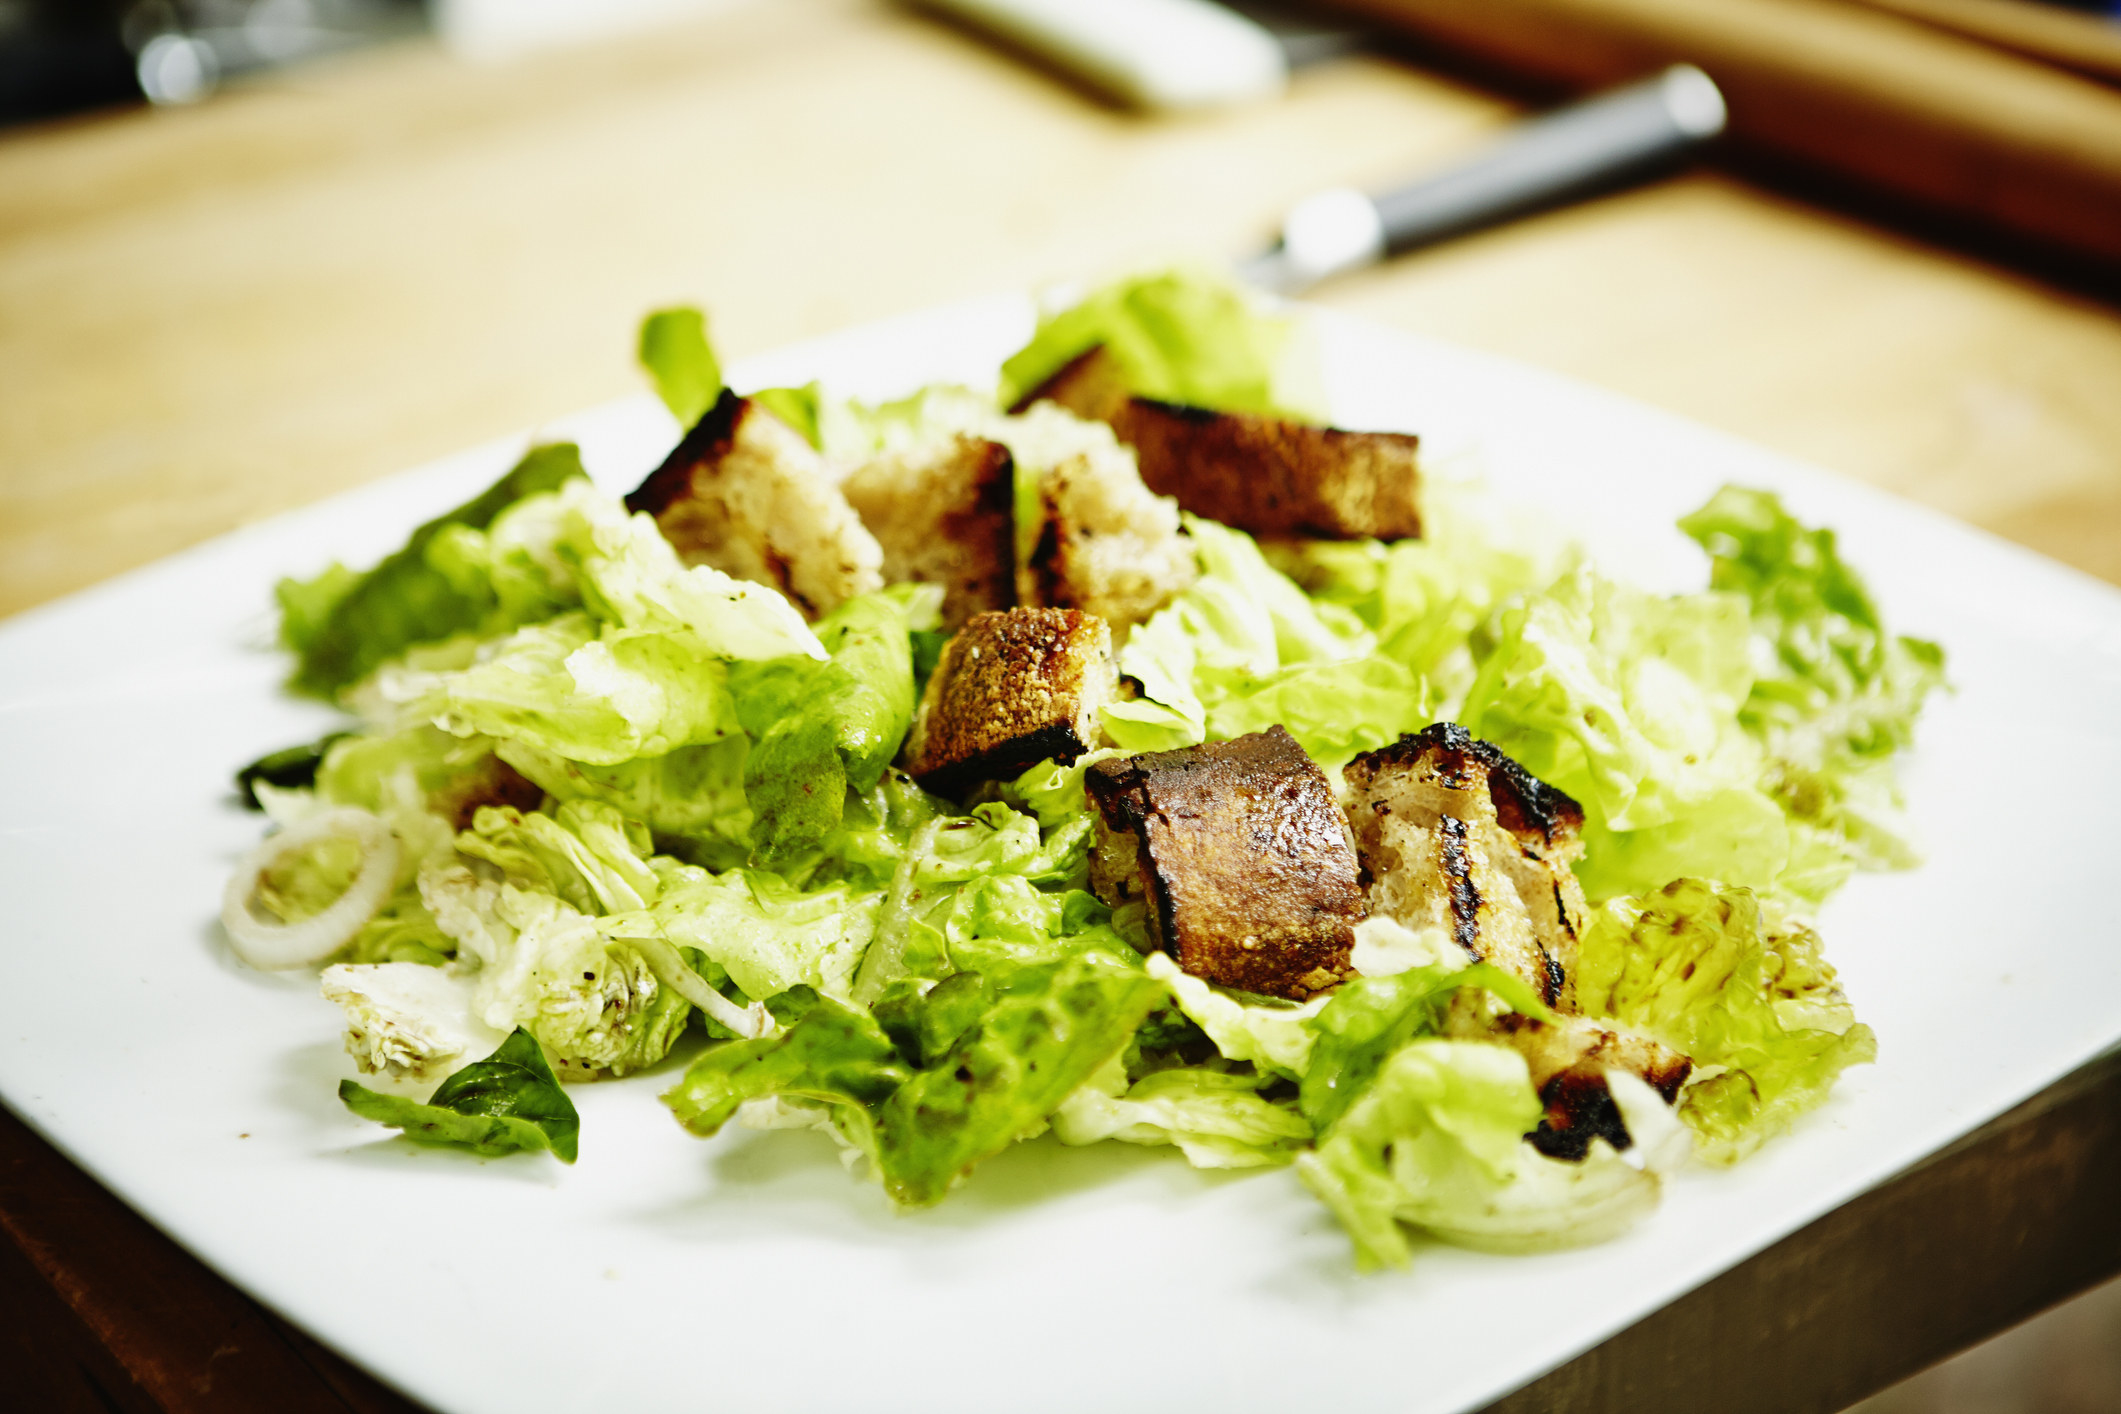 Simple Caesar salad on a plate